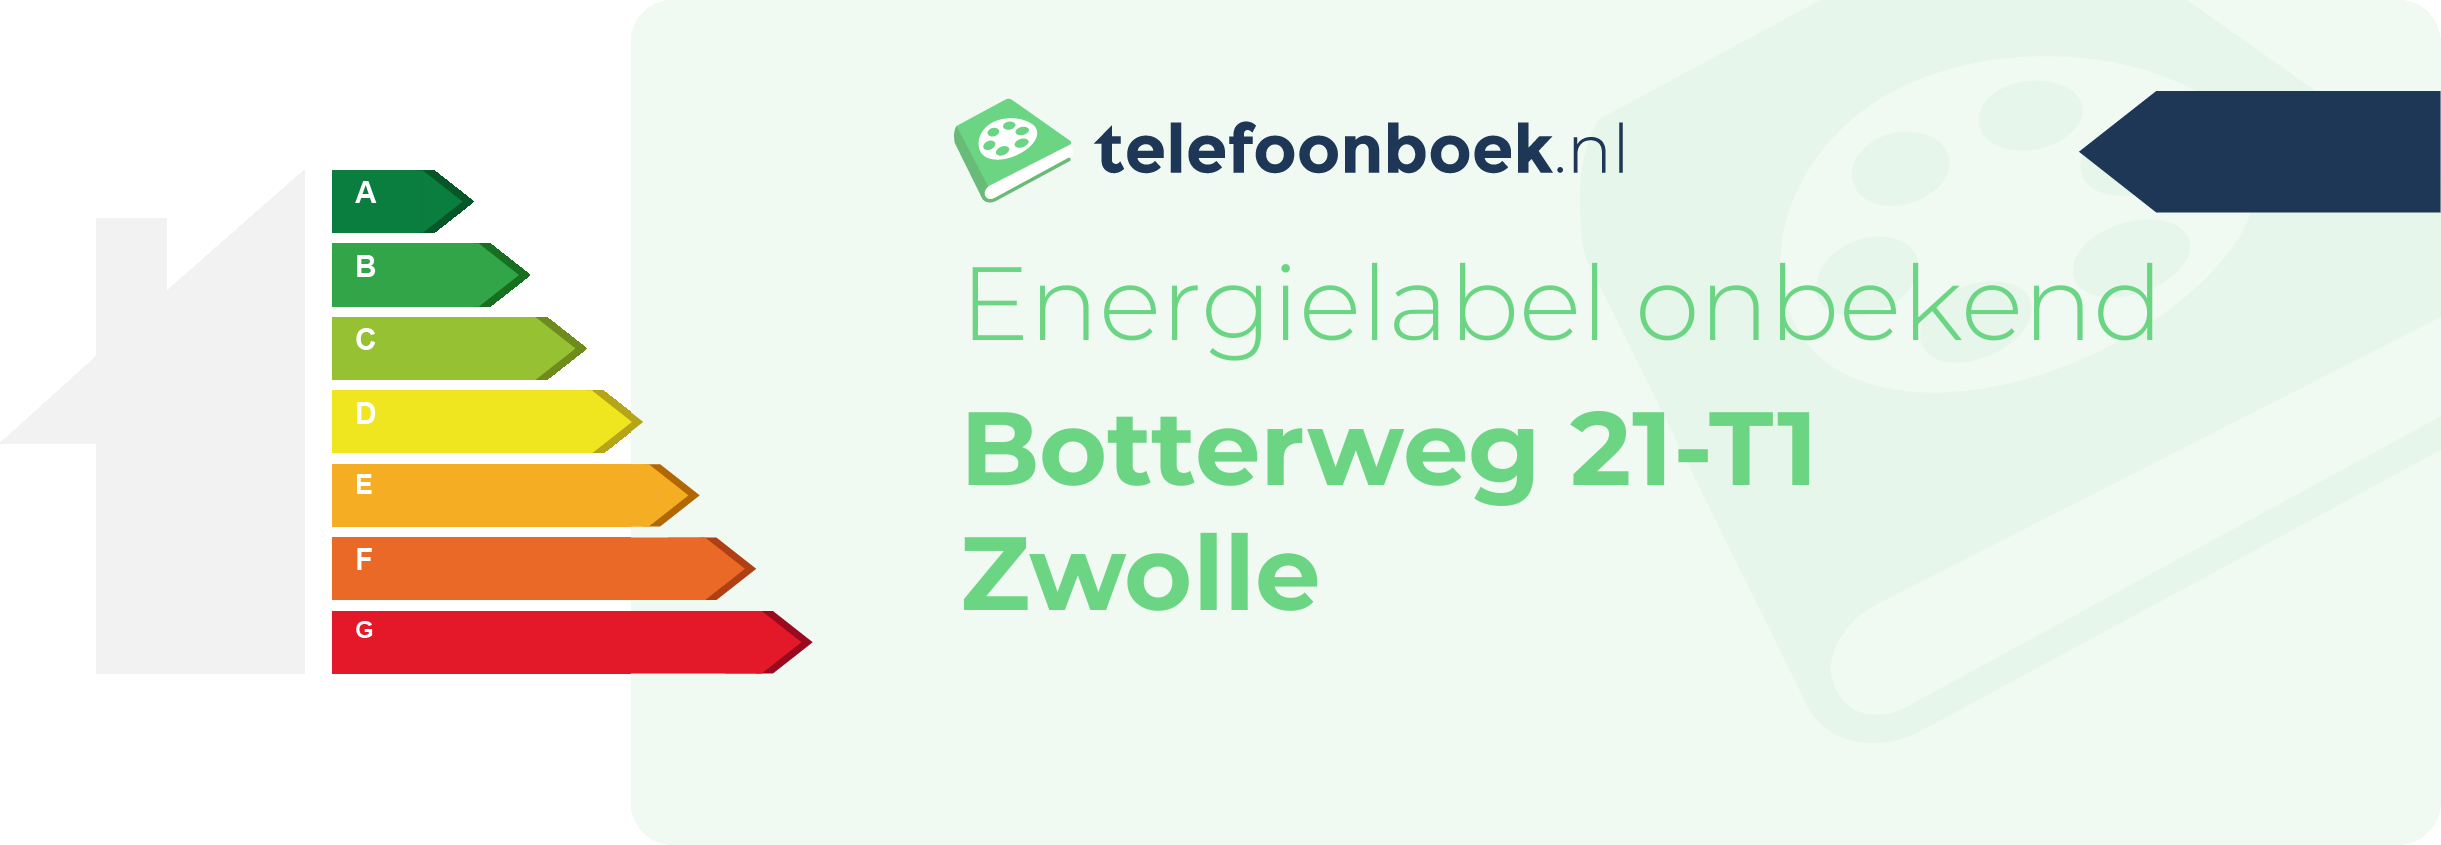 Energielabel Botterweg 21-T1 Zwolle